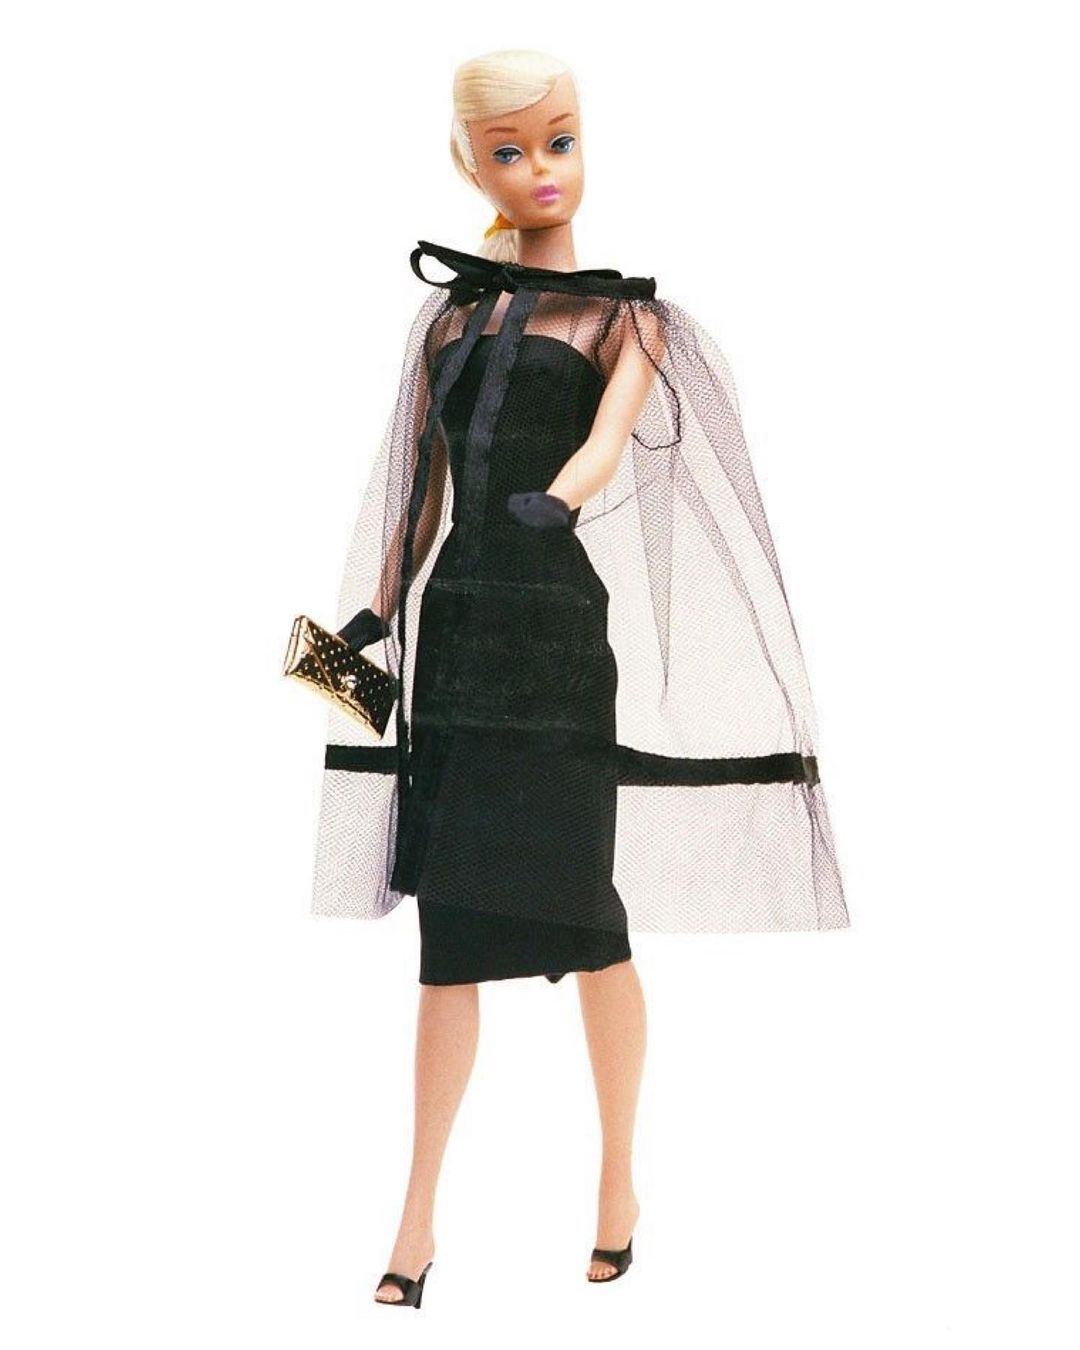 Η Margot Robbie κάνει εμφάνιση εμπνευσμένη από την Barbie στα Gotham Awards